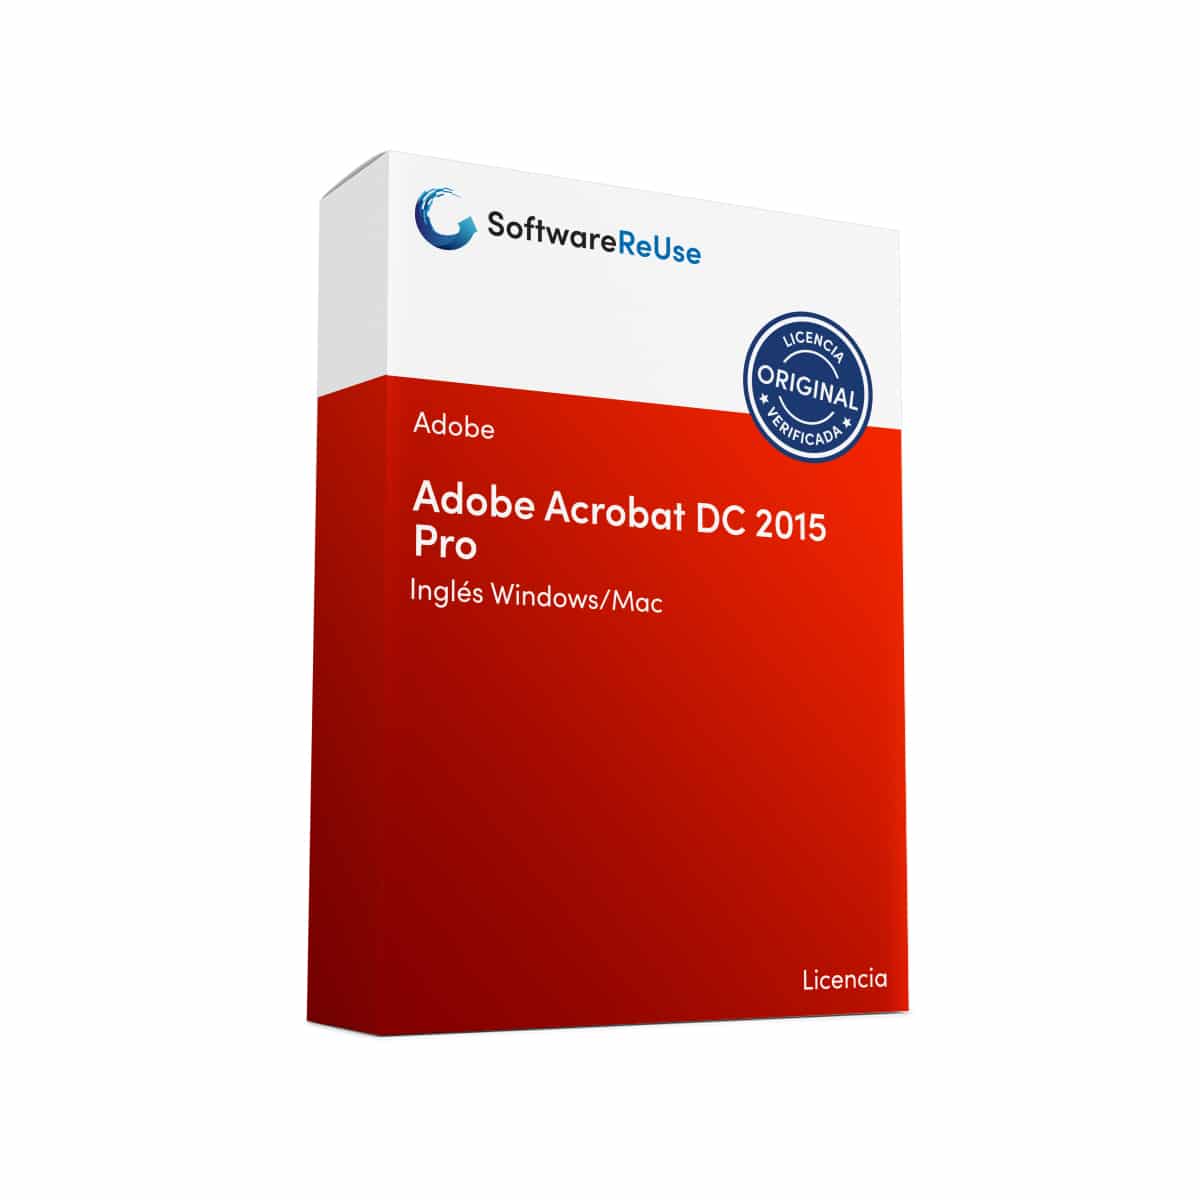 Adobe Acrobat DC 2015 Pro 6